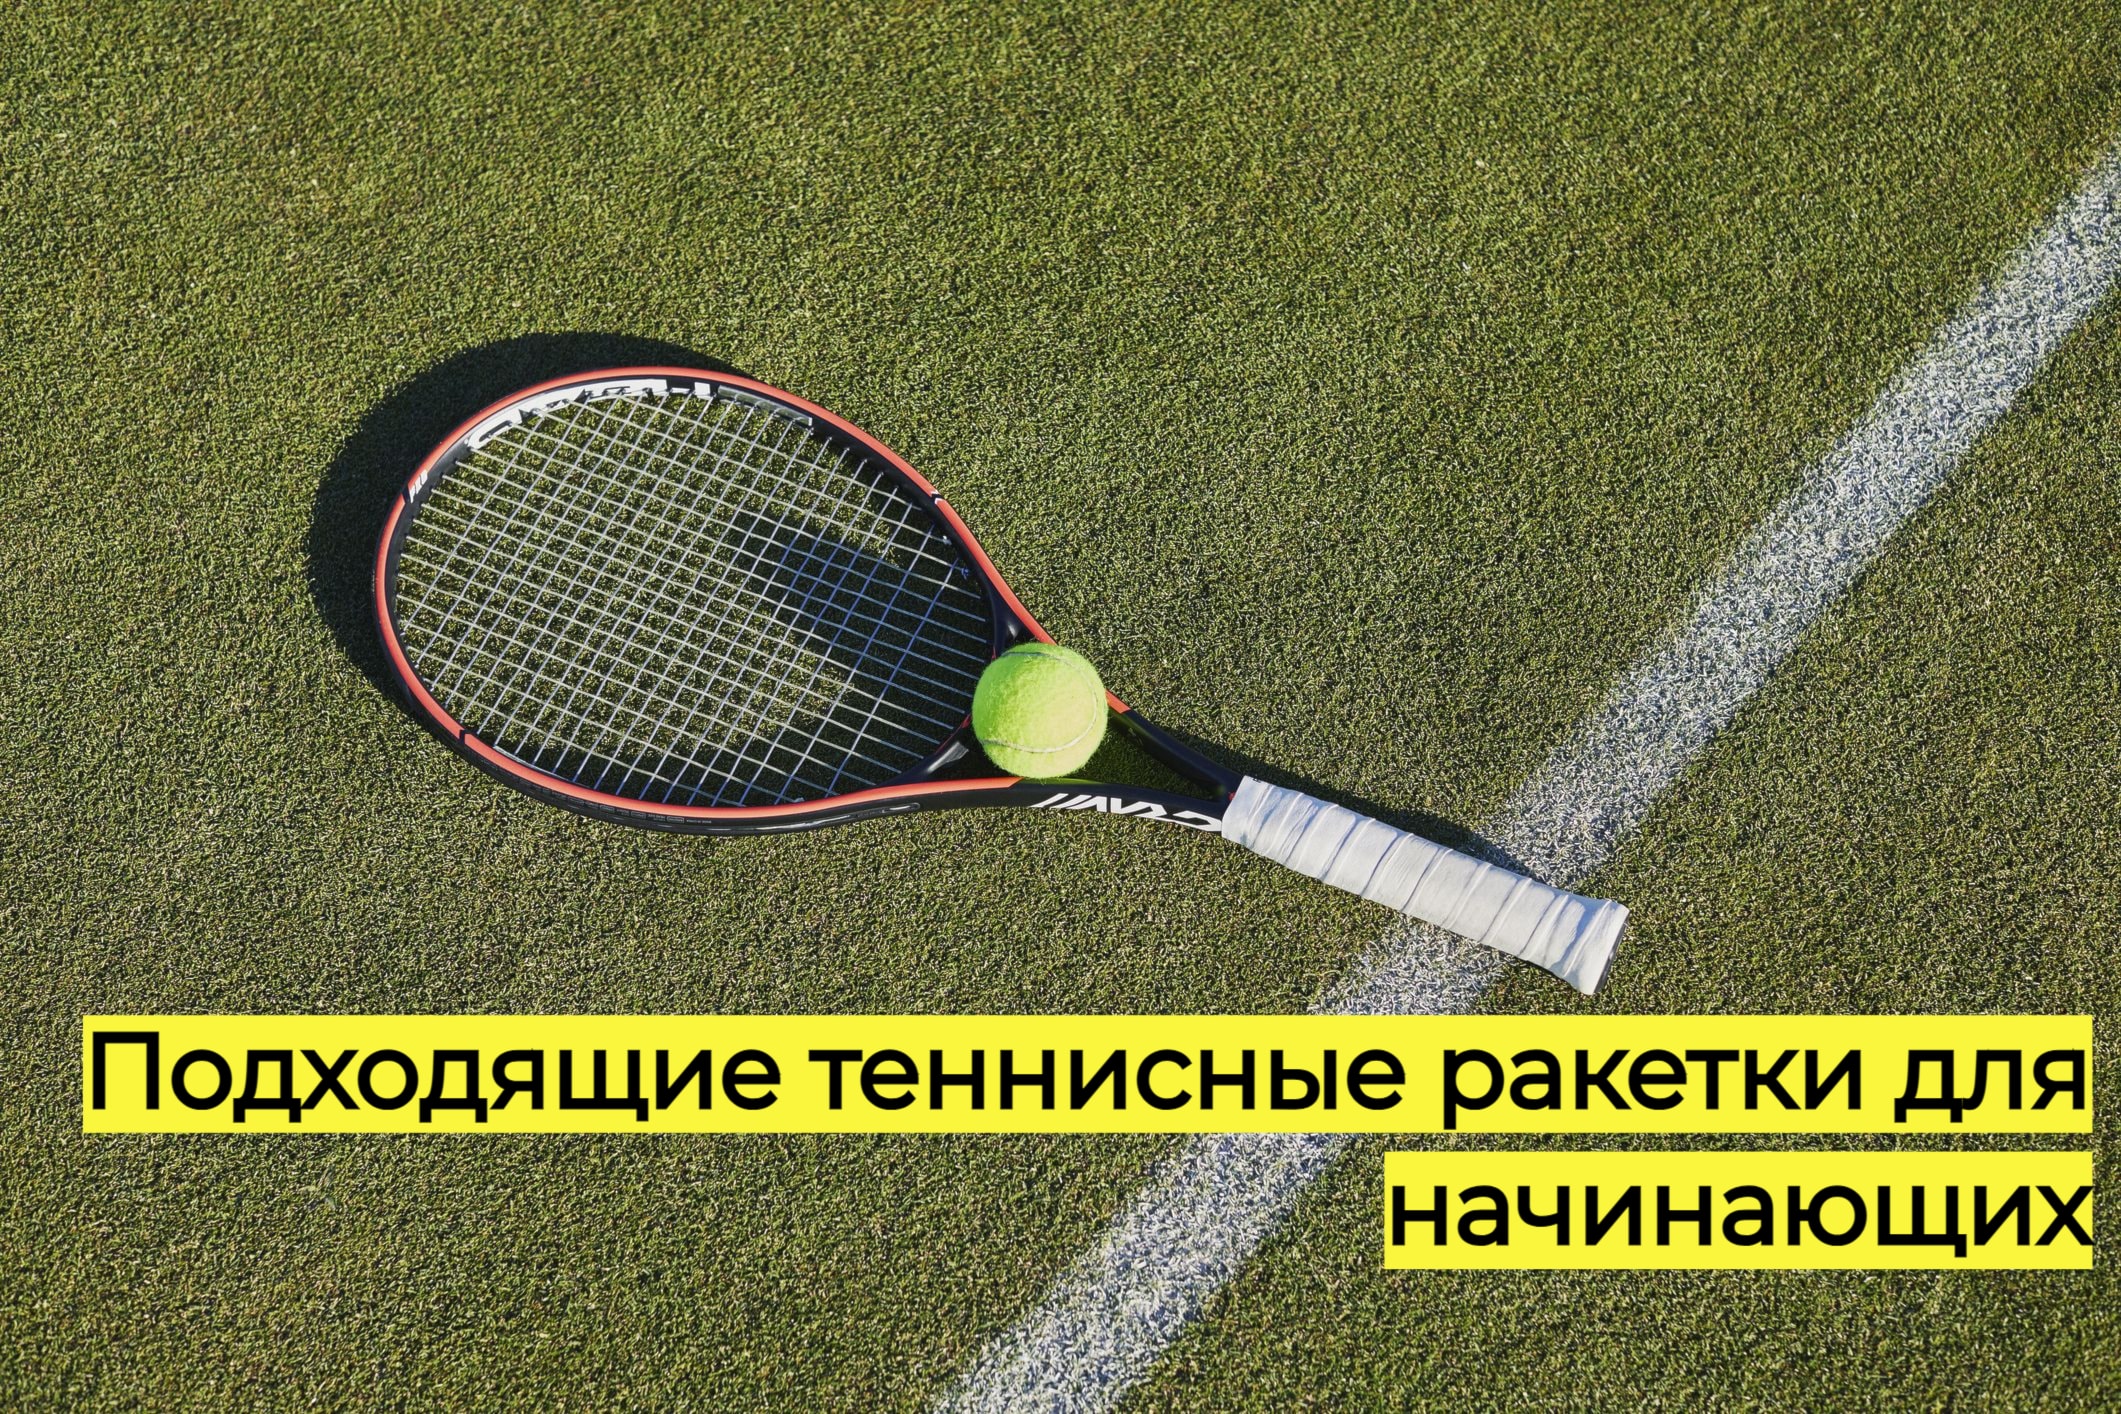 Теннисные ракетки для начинающих игроков